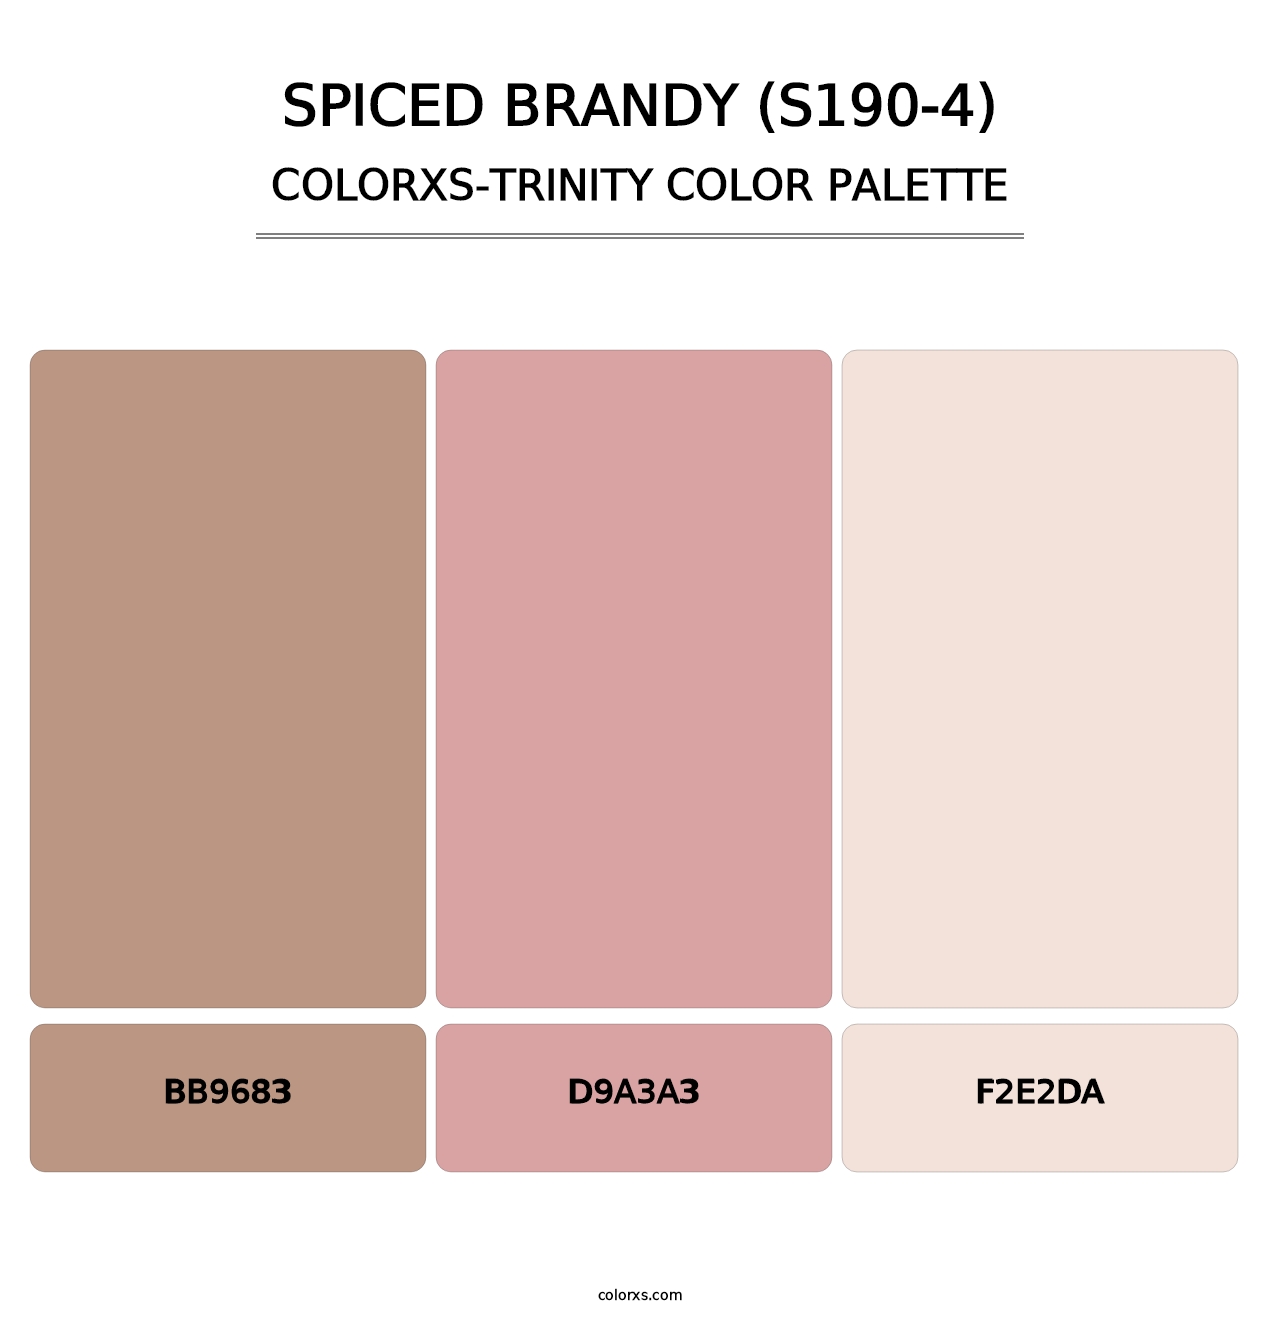 Spiced Brandy (S190-4) - Colorxs Trinity Palette